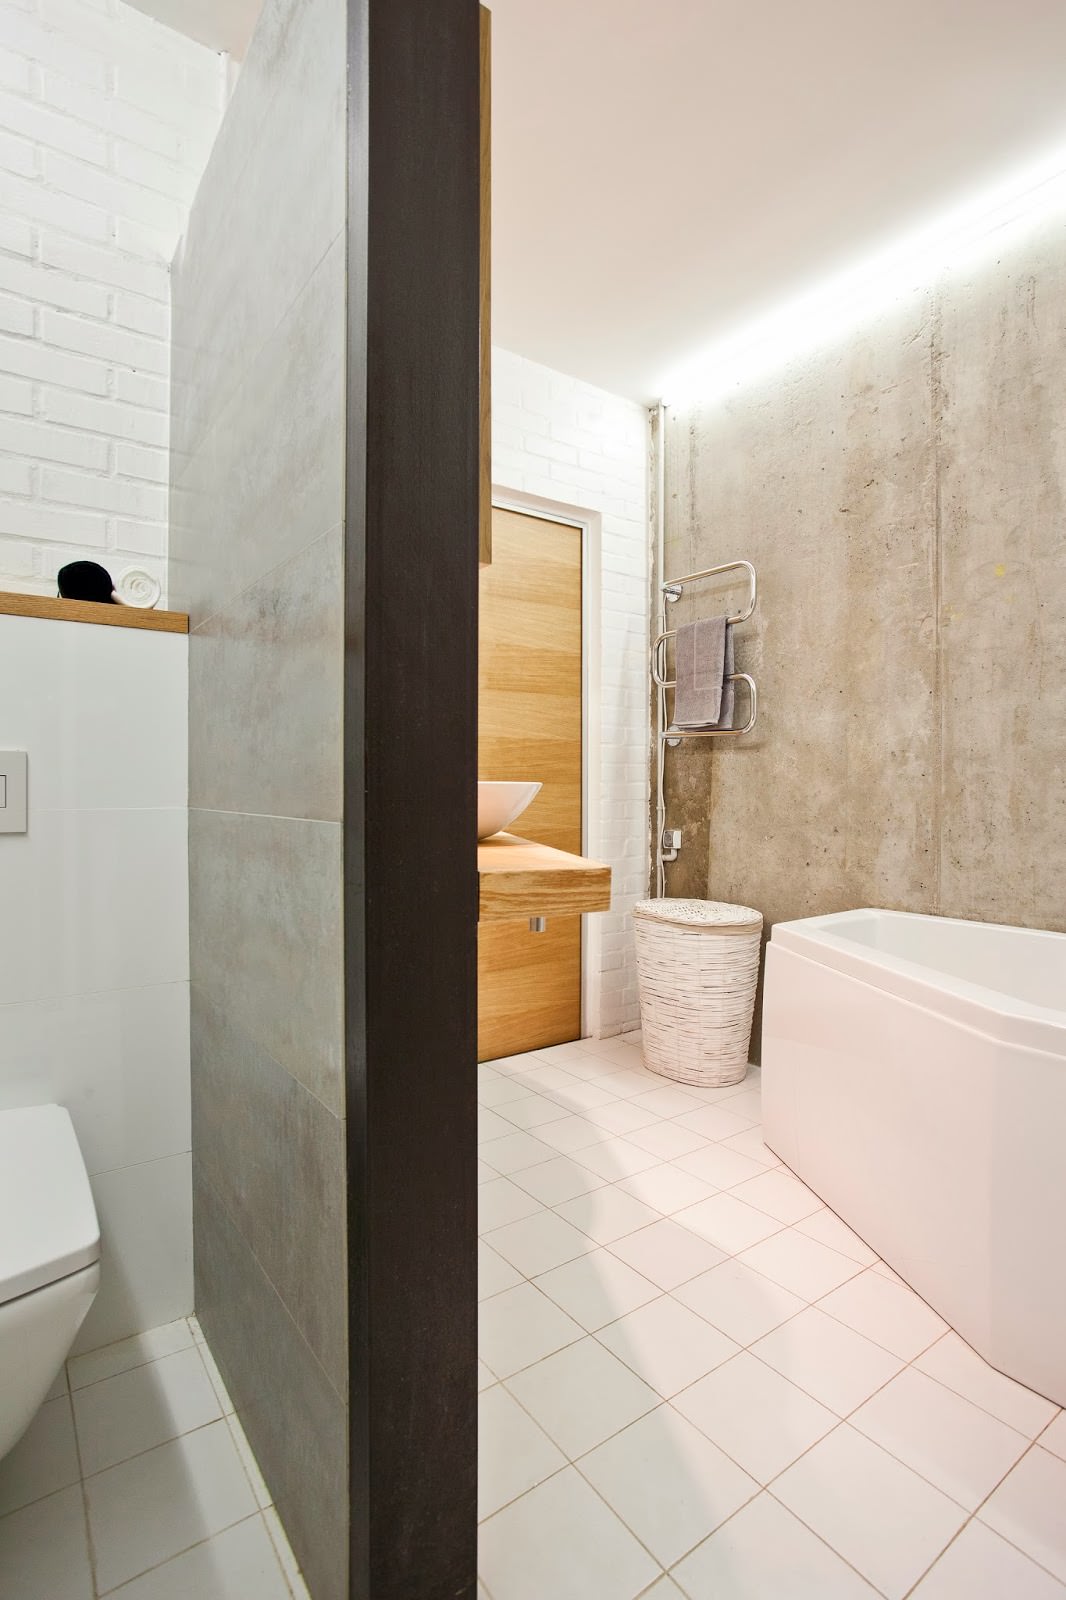 בטון בחלק הפנימי של דירה יצירתית: חדר אמבטיה